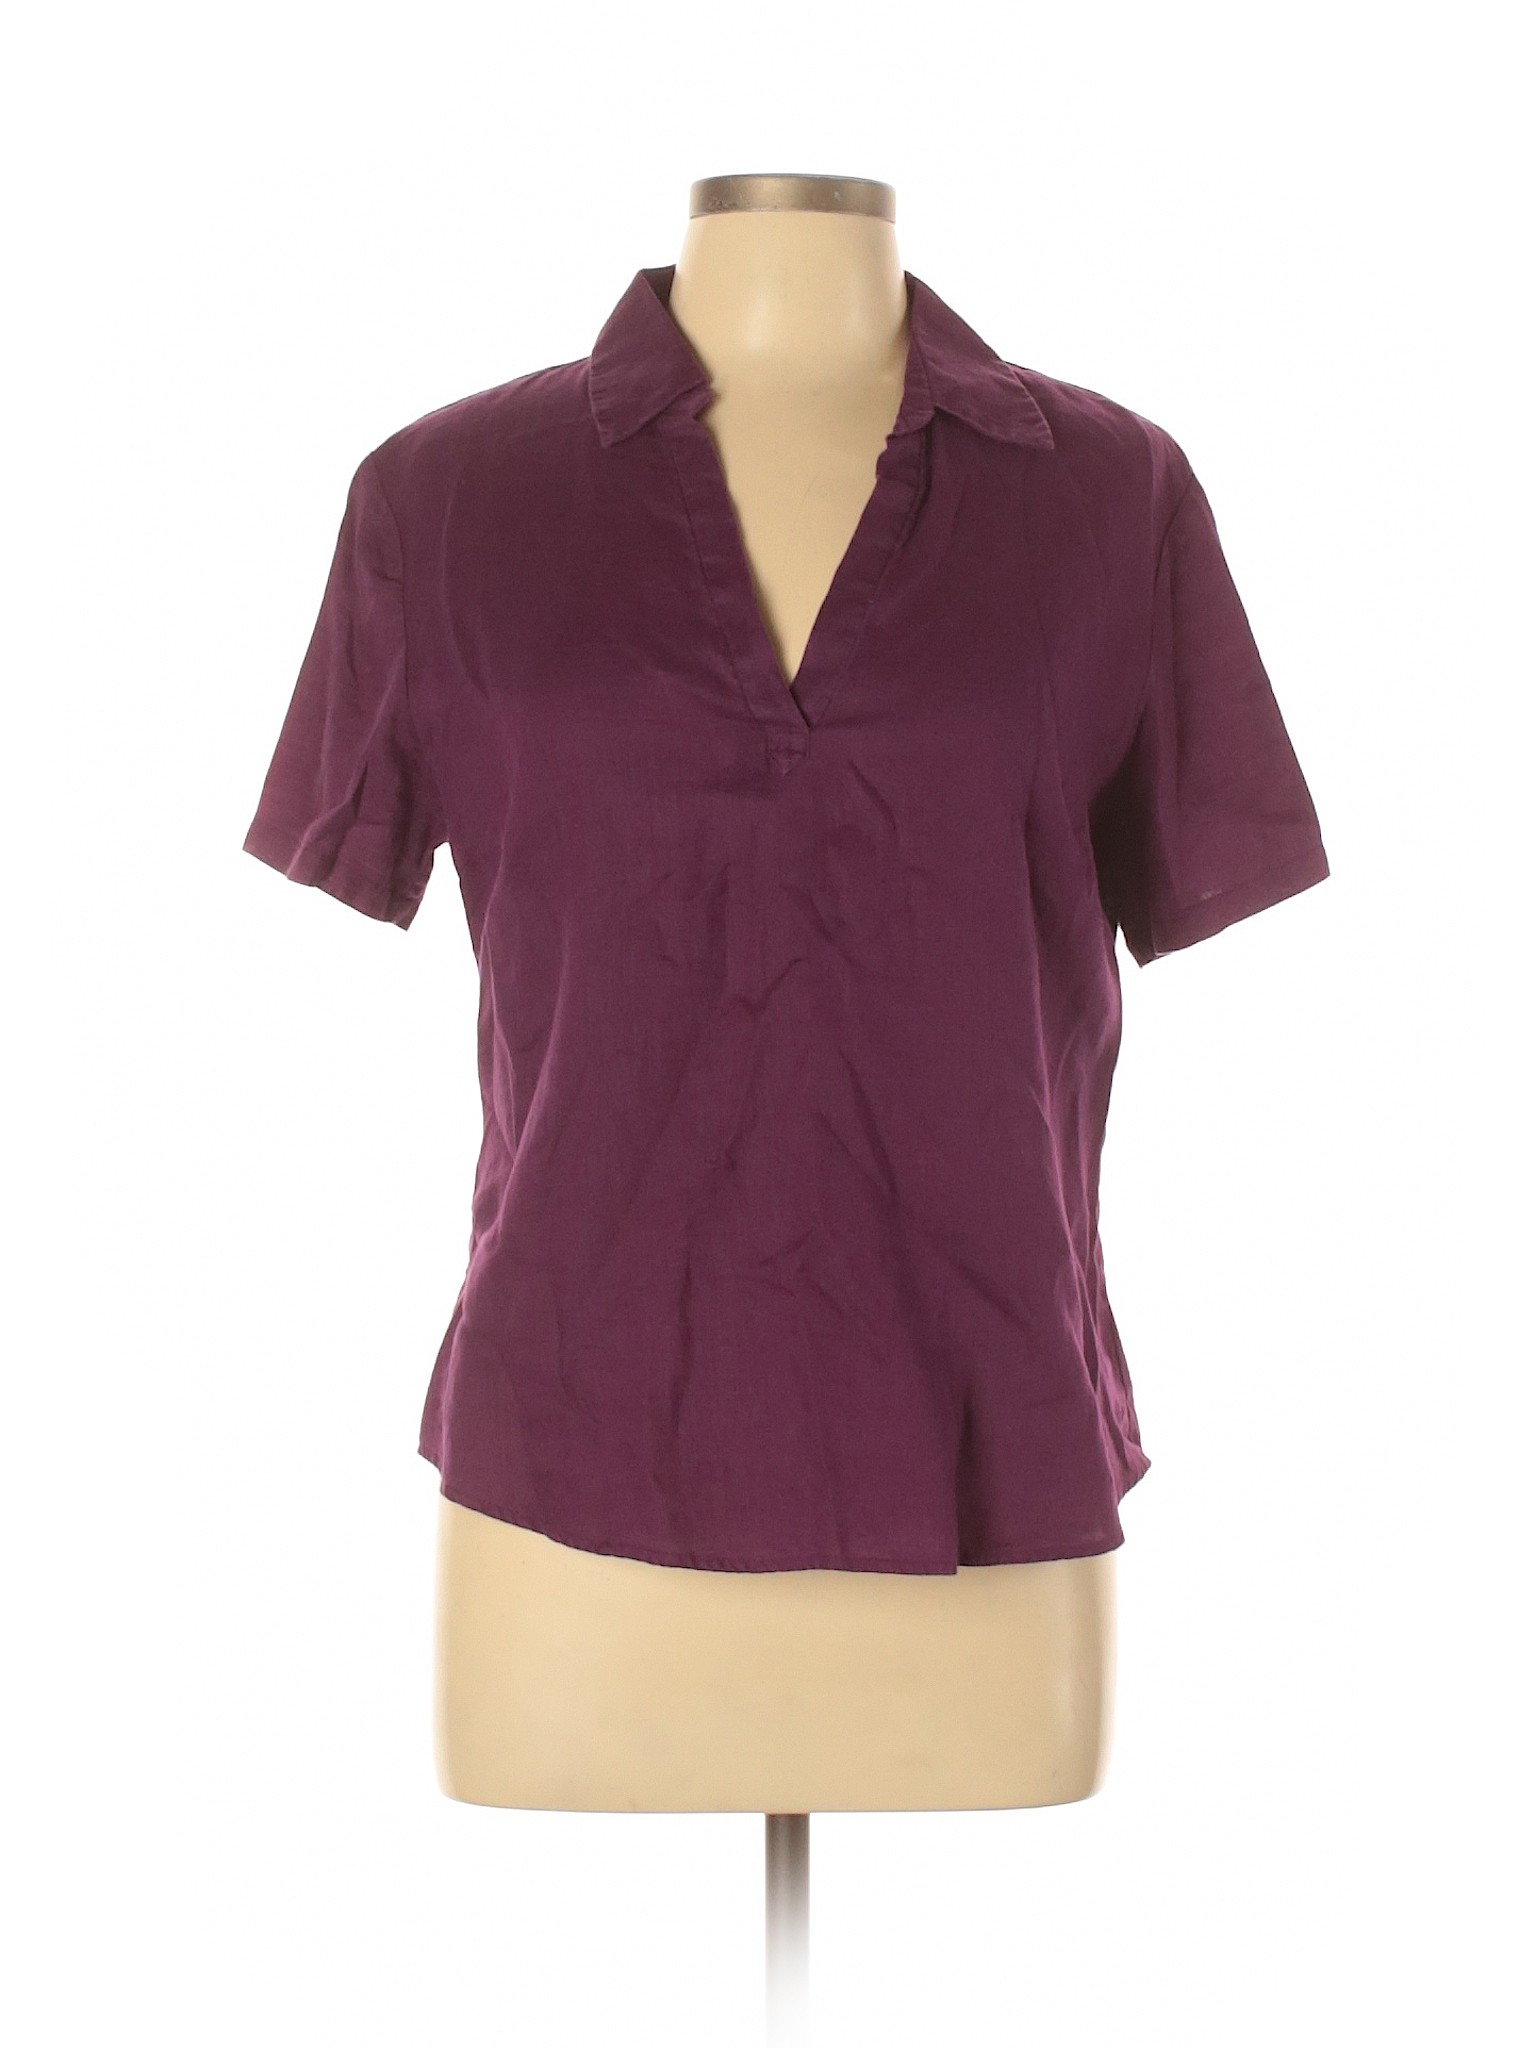 Old Navy Women Purple Short Sleeve Blouse L | eBay